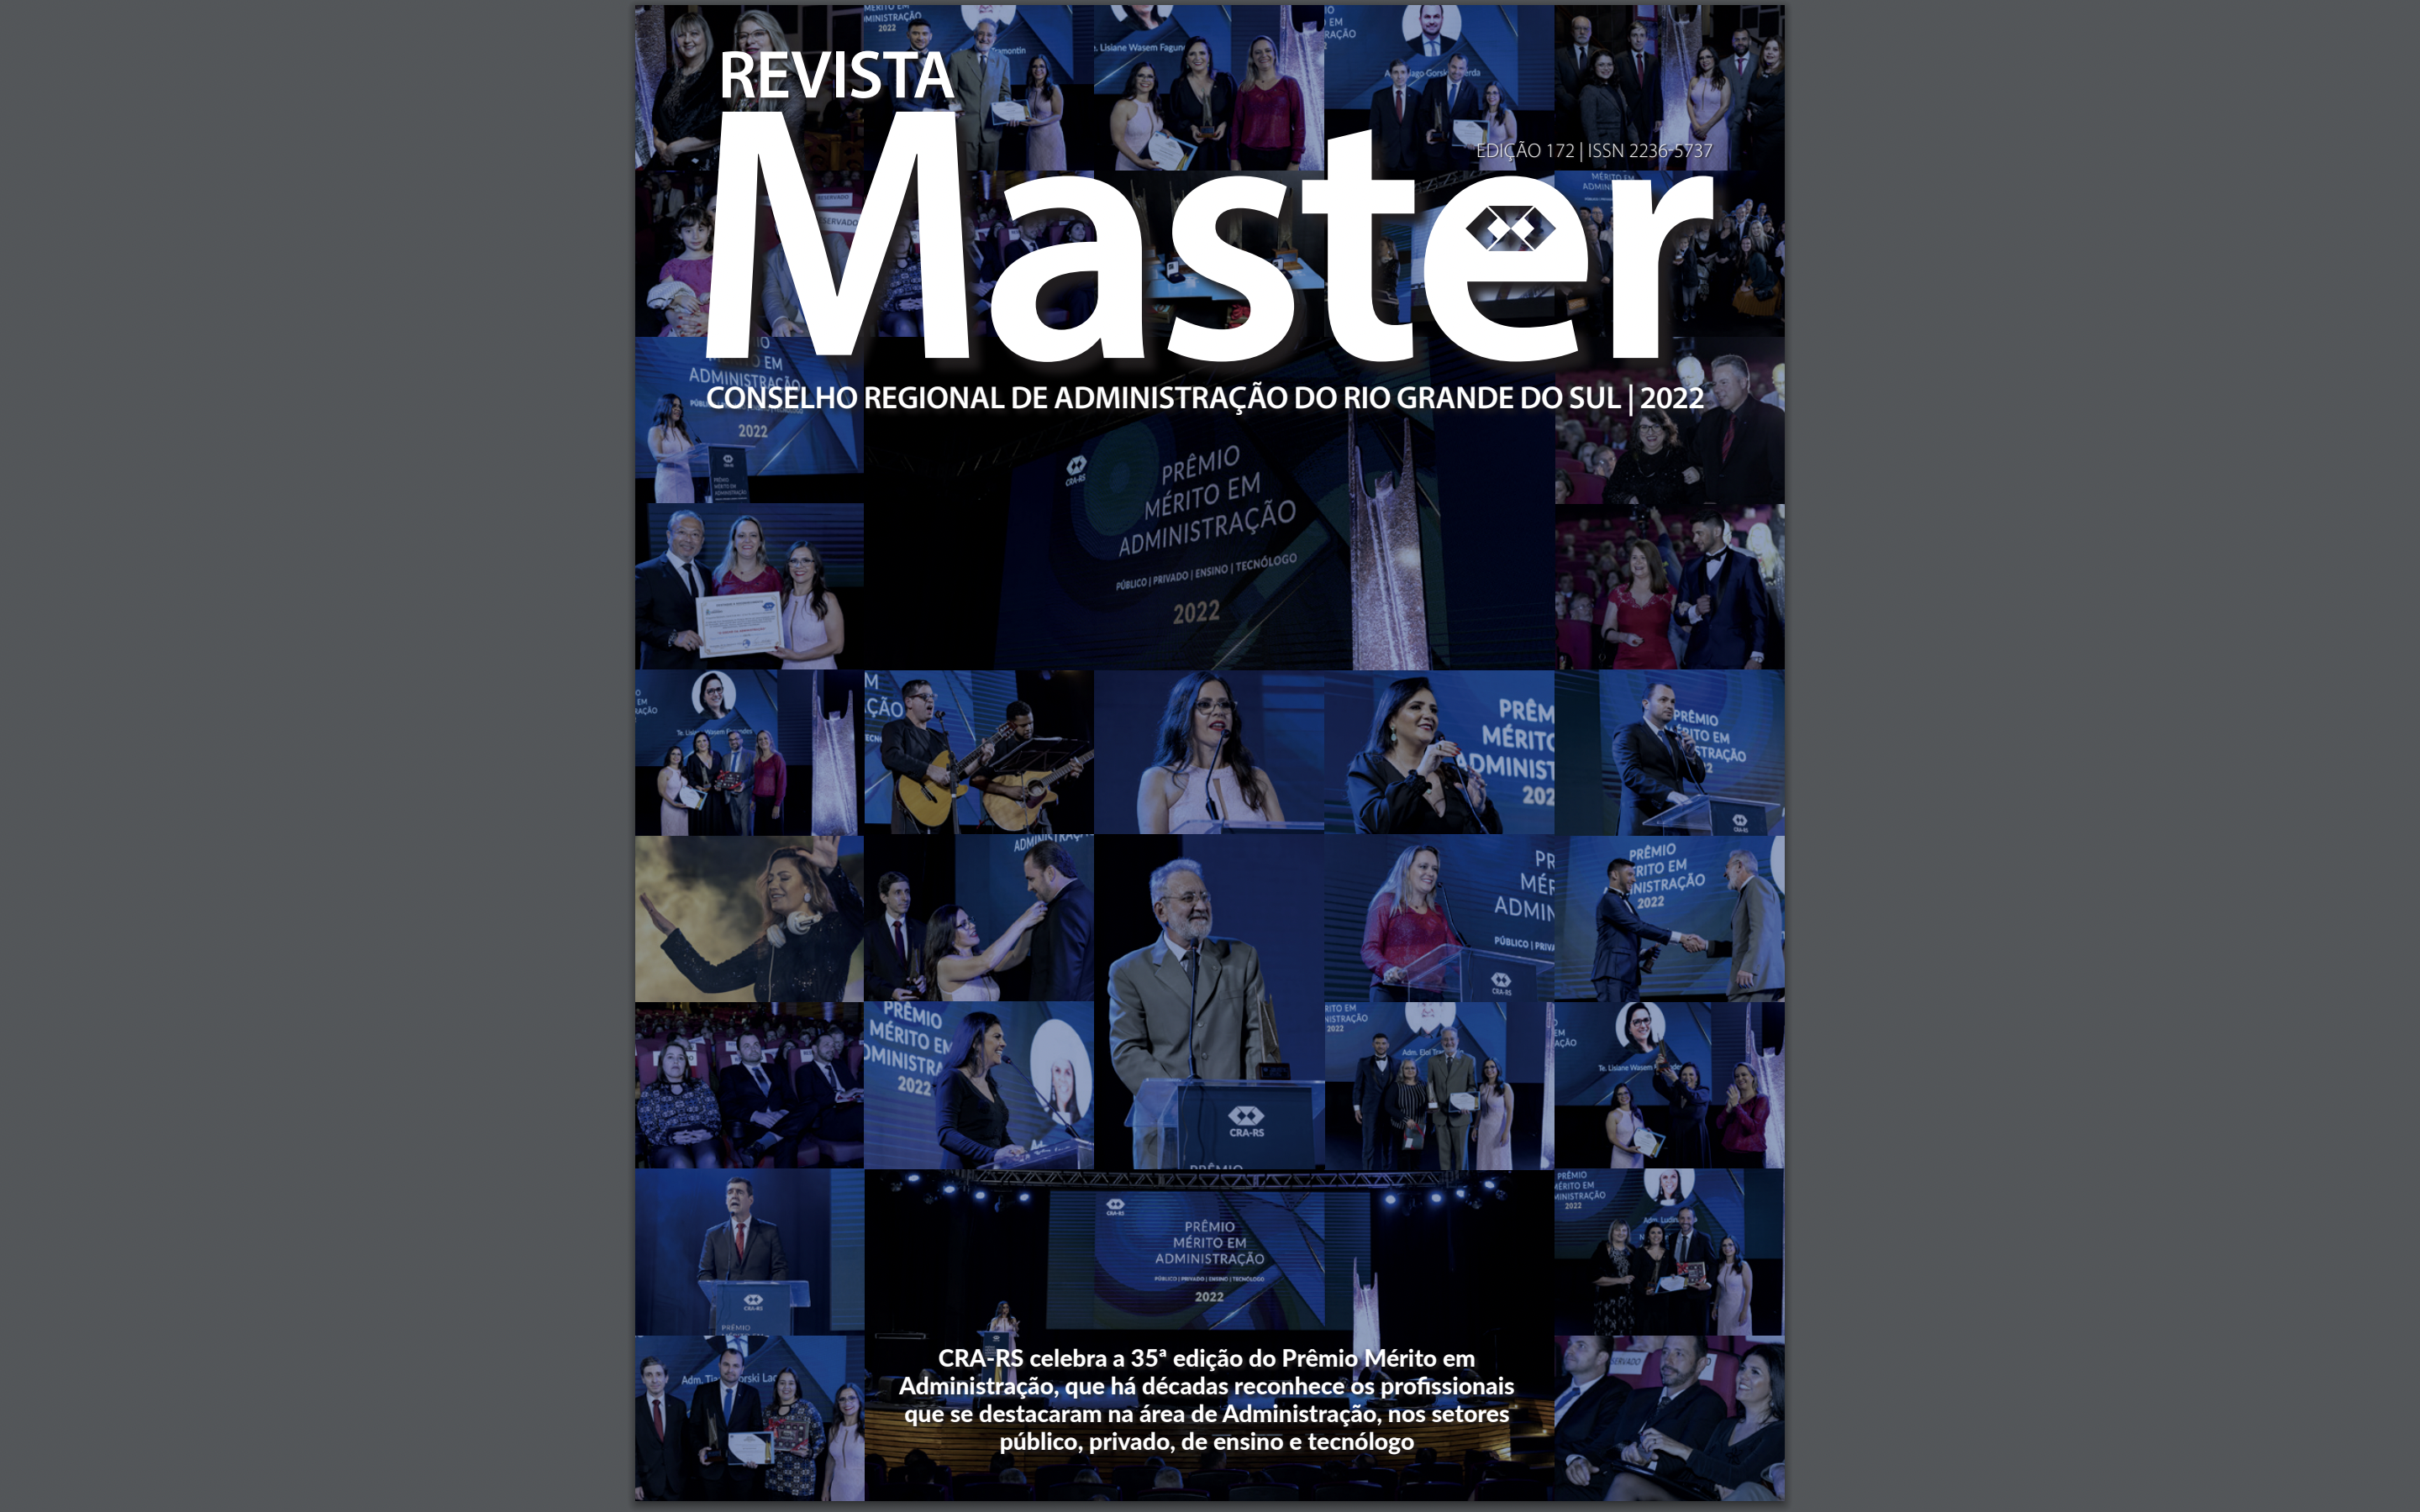 Revista Master celebra a 35ª edição do Prêmio Mérito em Administração